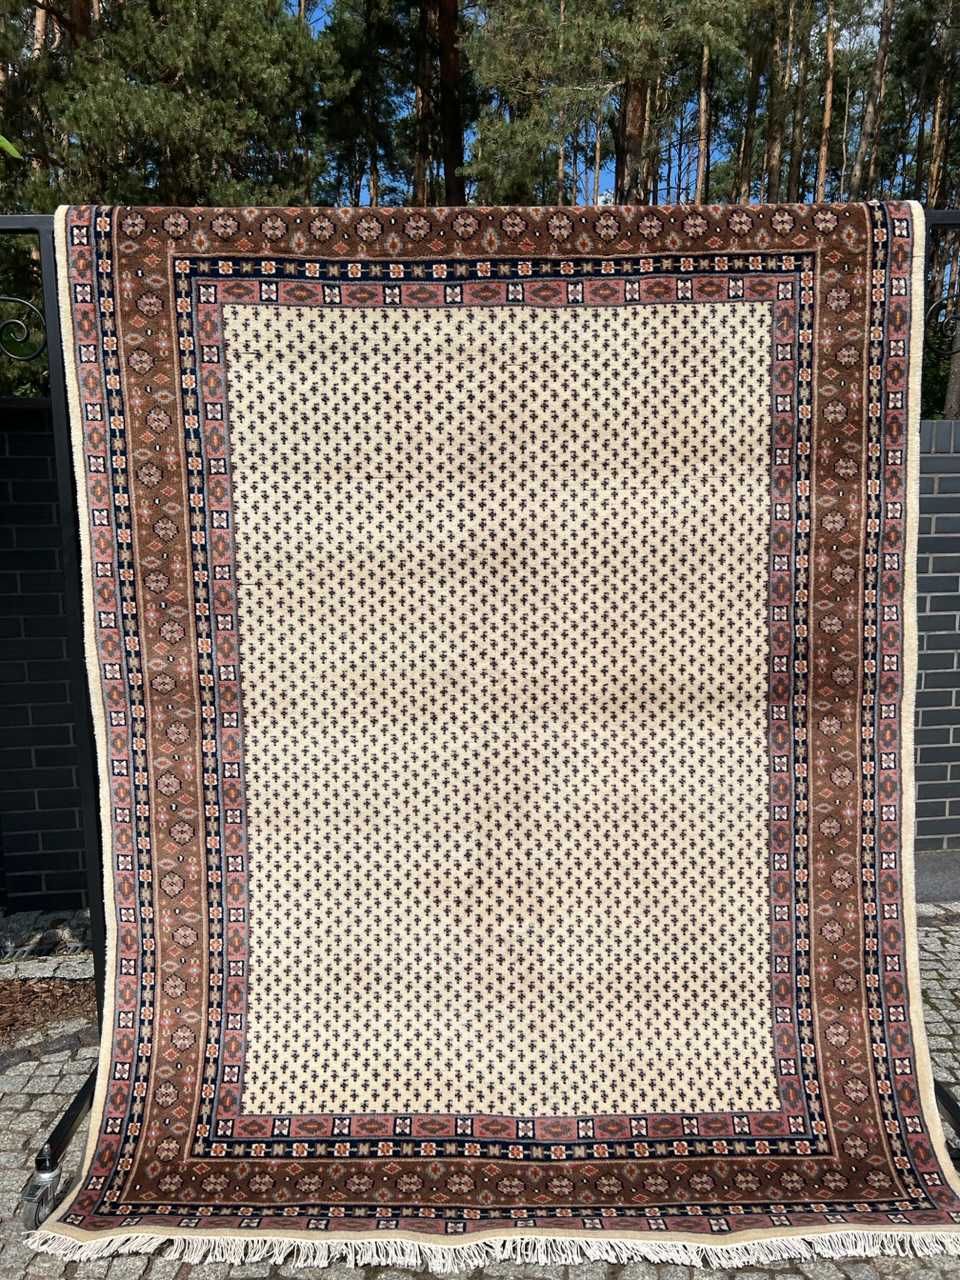 Nowy dywan kaszmirowy perski INDO-MIR 240x175 galeria 15tyś